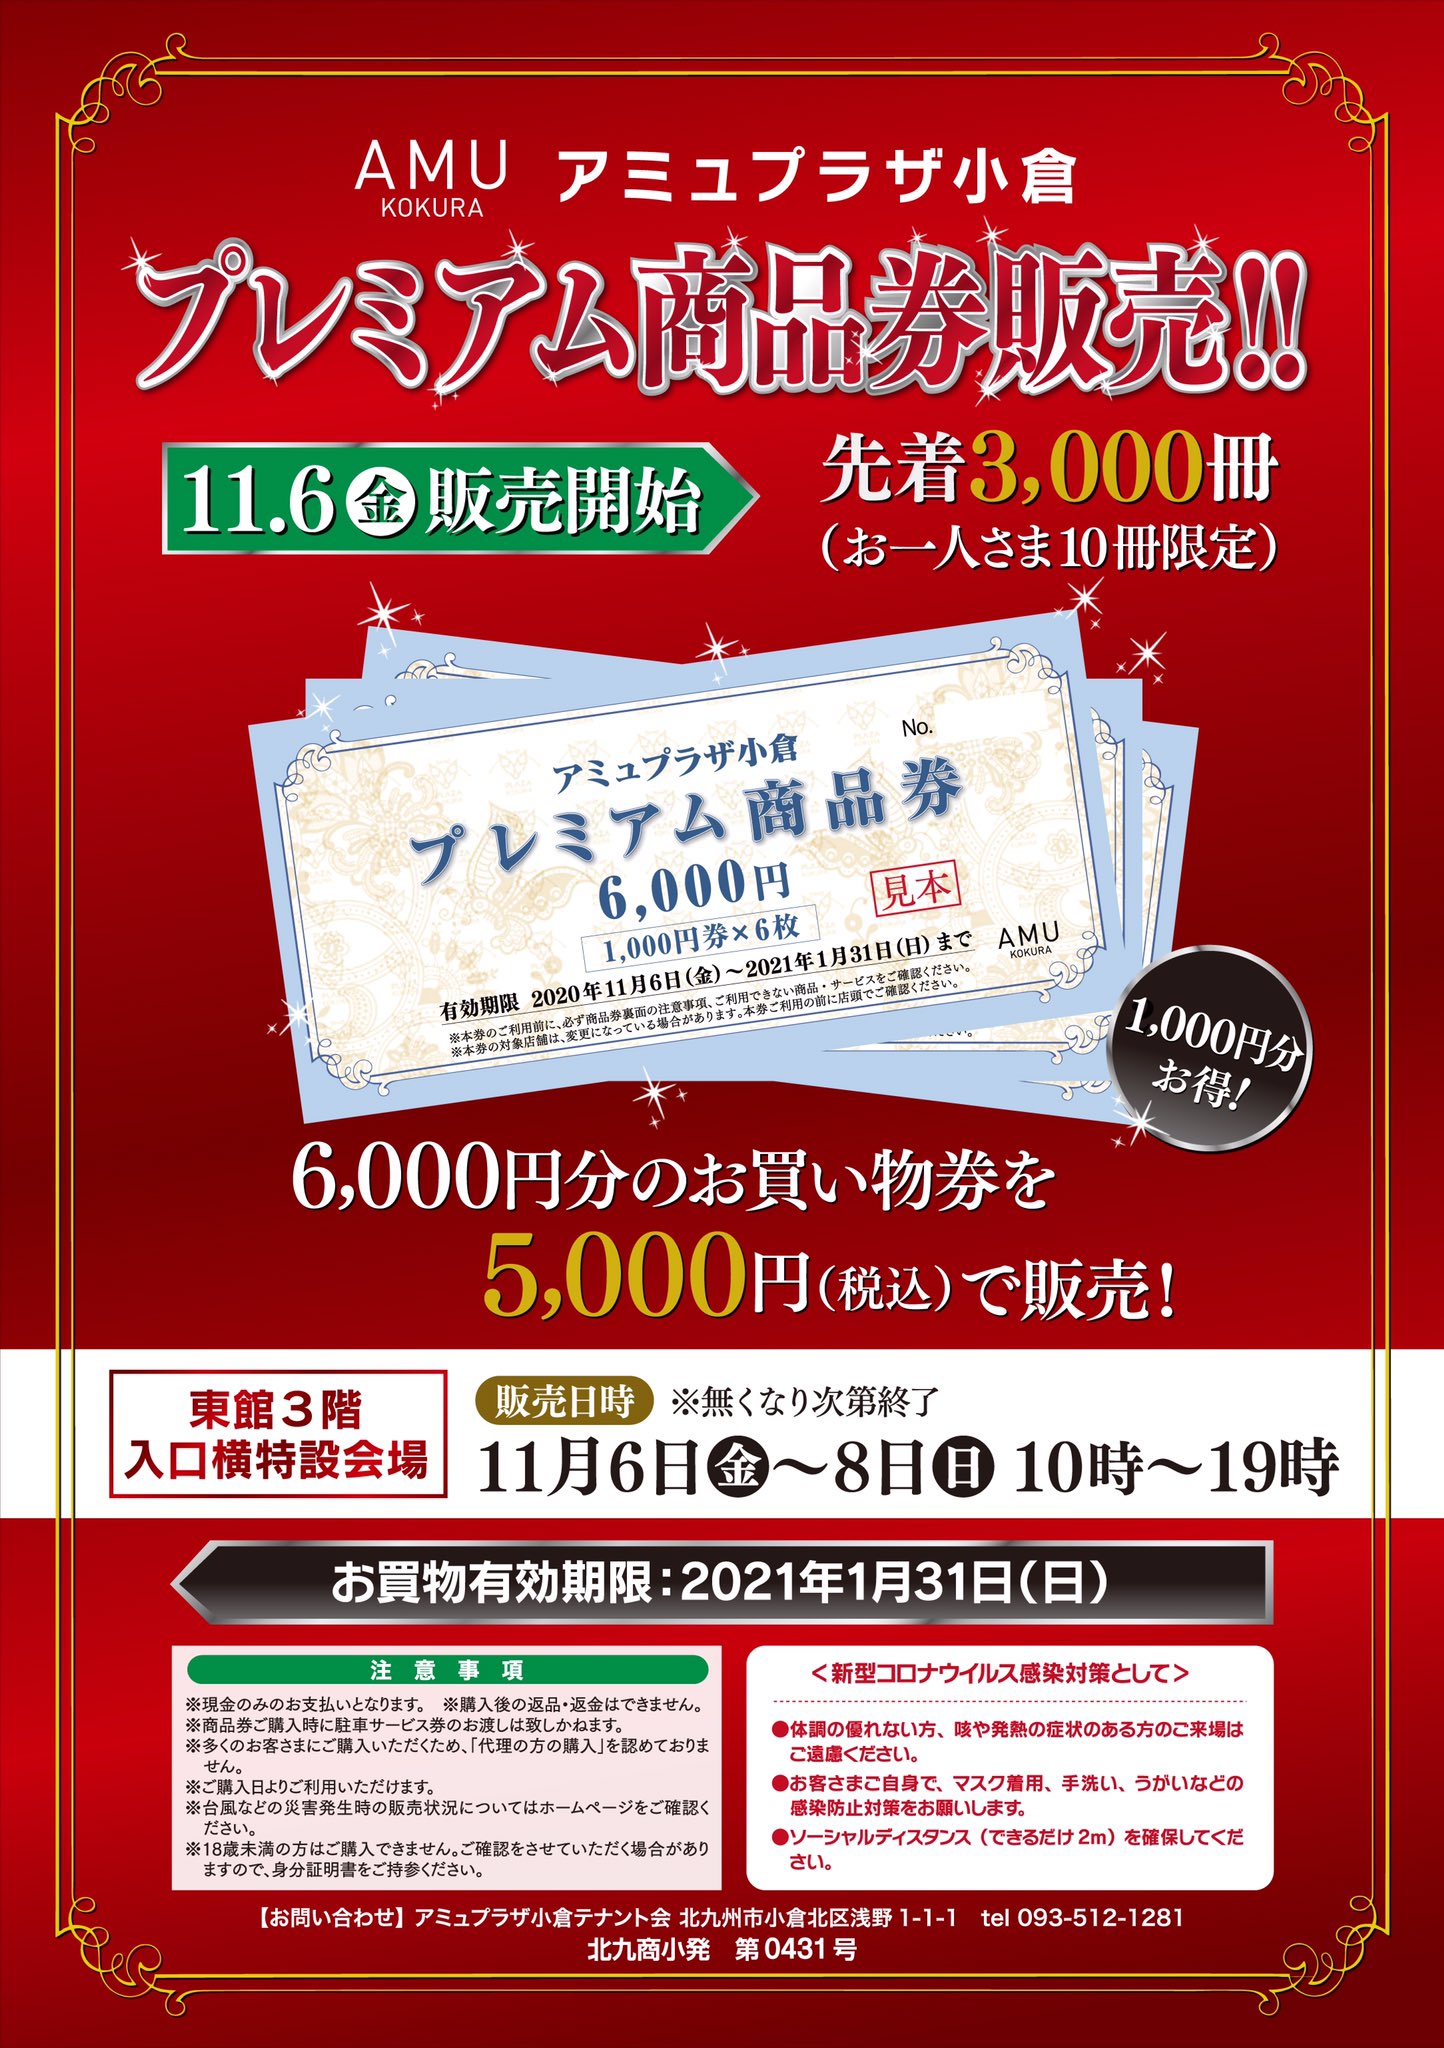 5000円分 アミュプラザ博多/小倉 お買い物券